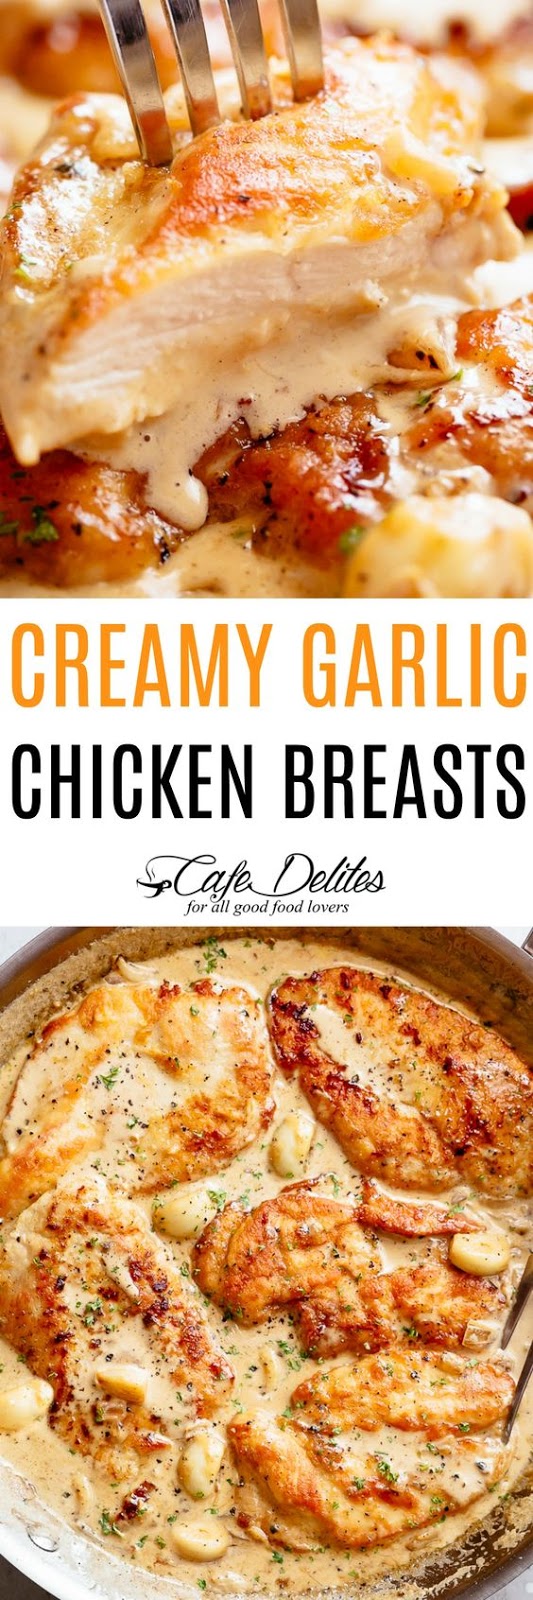 Creamy Garlic Chicken Breasts - Recipe Notes